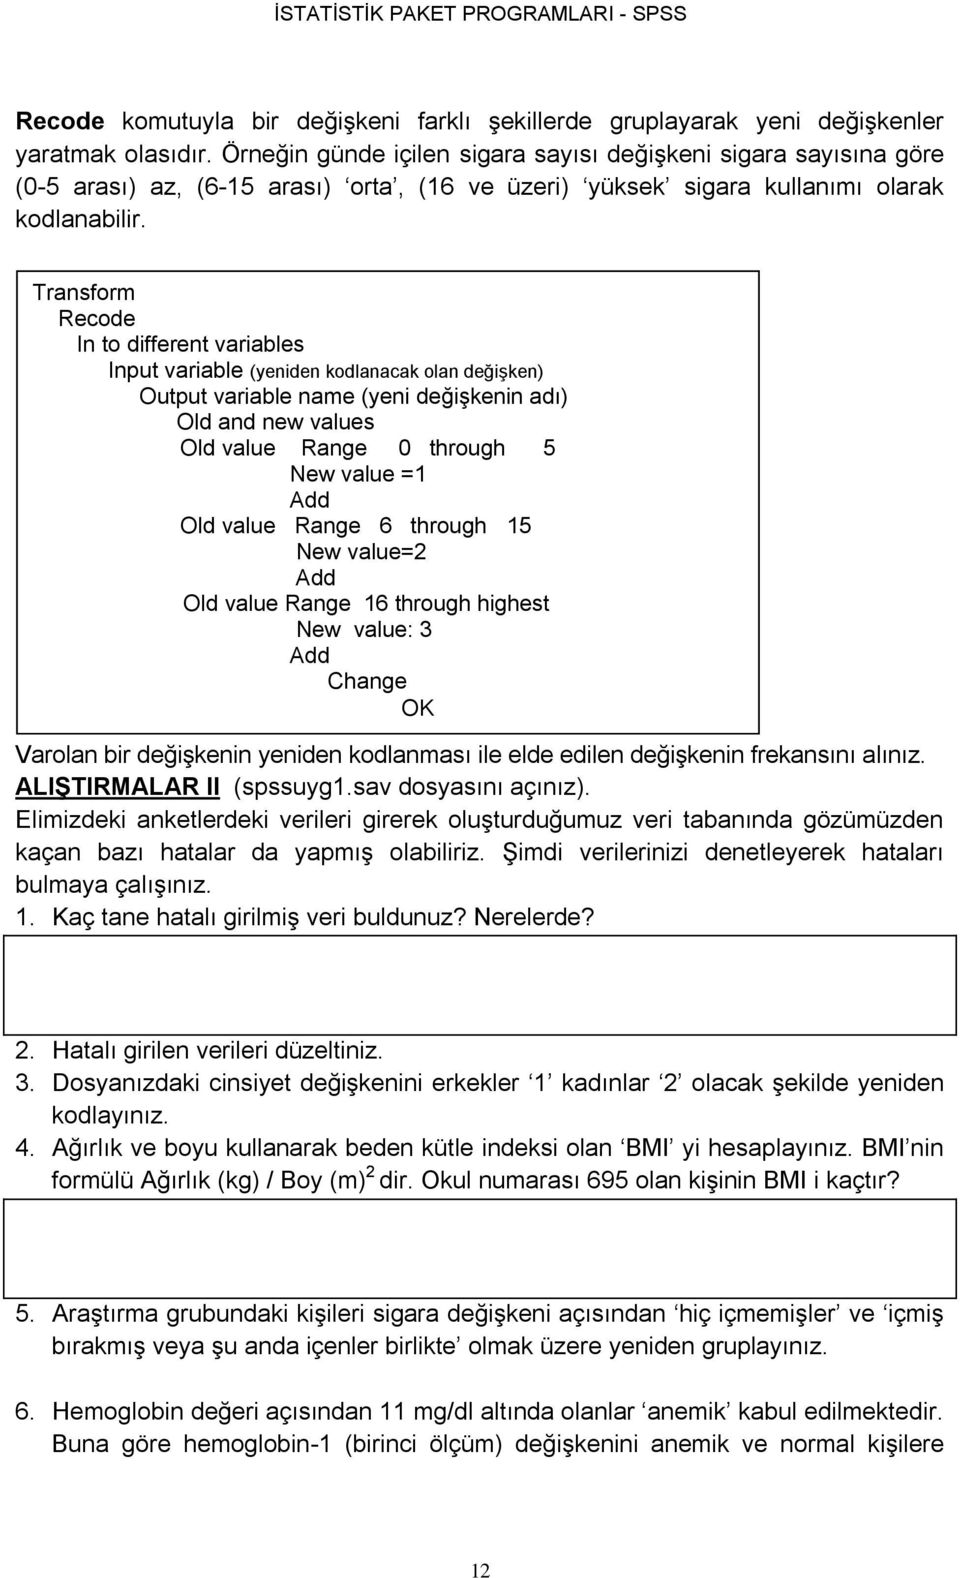 İSTATİSTİK PAKET PROGRAMLARI - SPSS - PDF Ücretsiz indirin